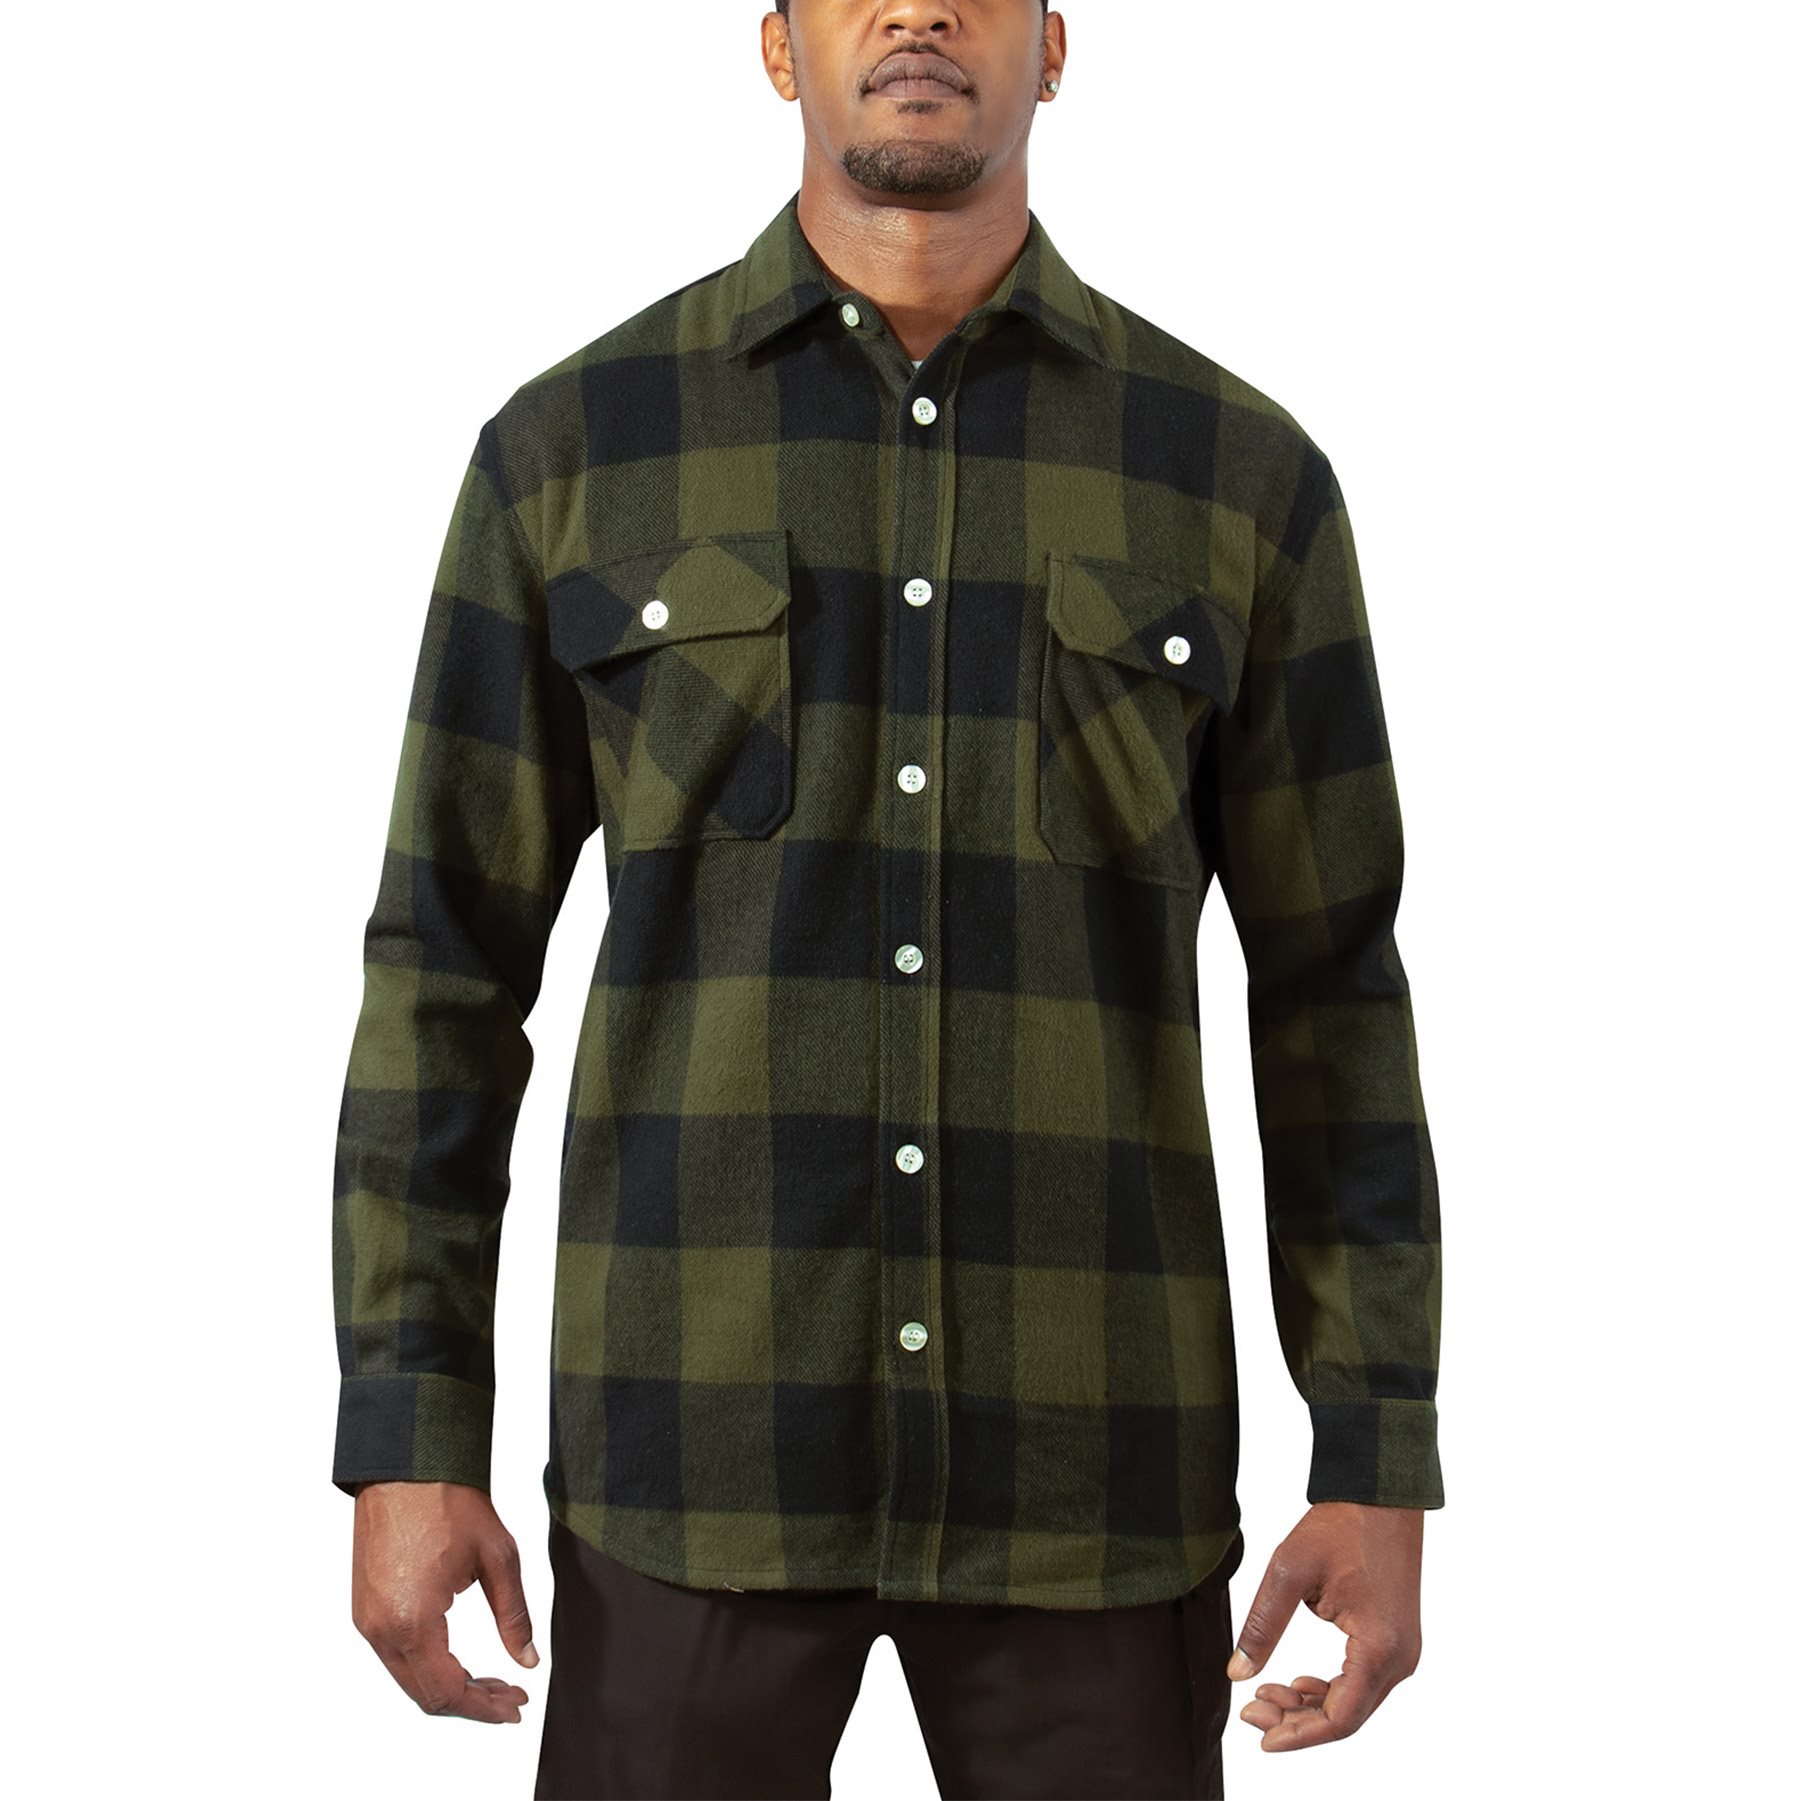 Lumberjack plaid shirt FLANNEL OLIVE DRAB ROTHCO 47385 L-11